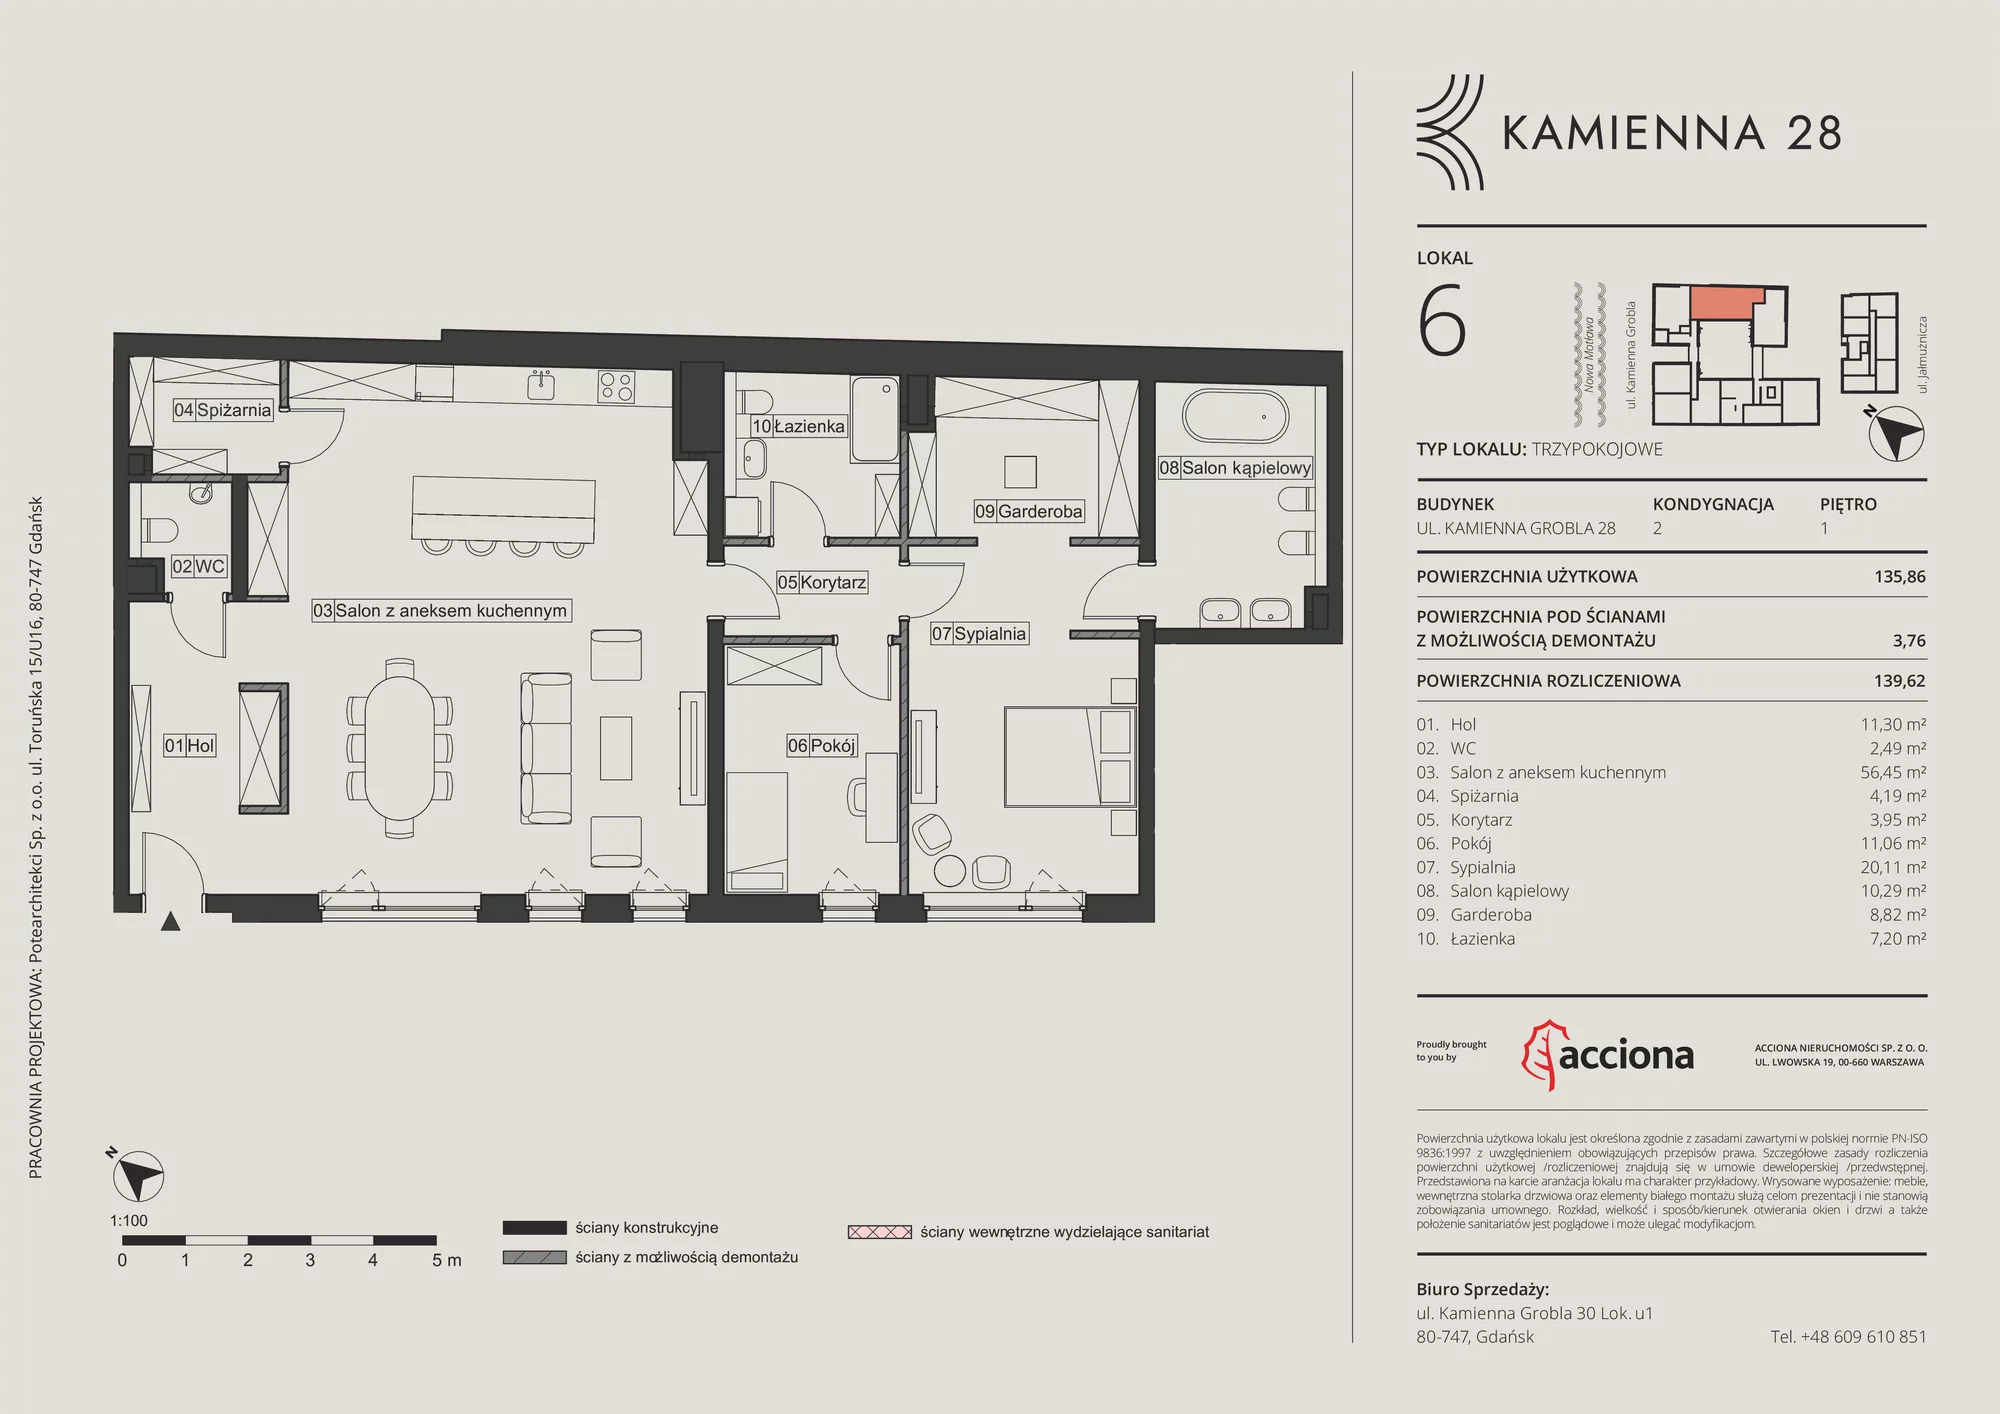 Apartament 139,62 m², piętro 1, oferta nr 28.6, Kamienna 28, Gdańsk, Śródmieście, Dolne Miasto, ul. Kamienna Grobla 28/29